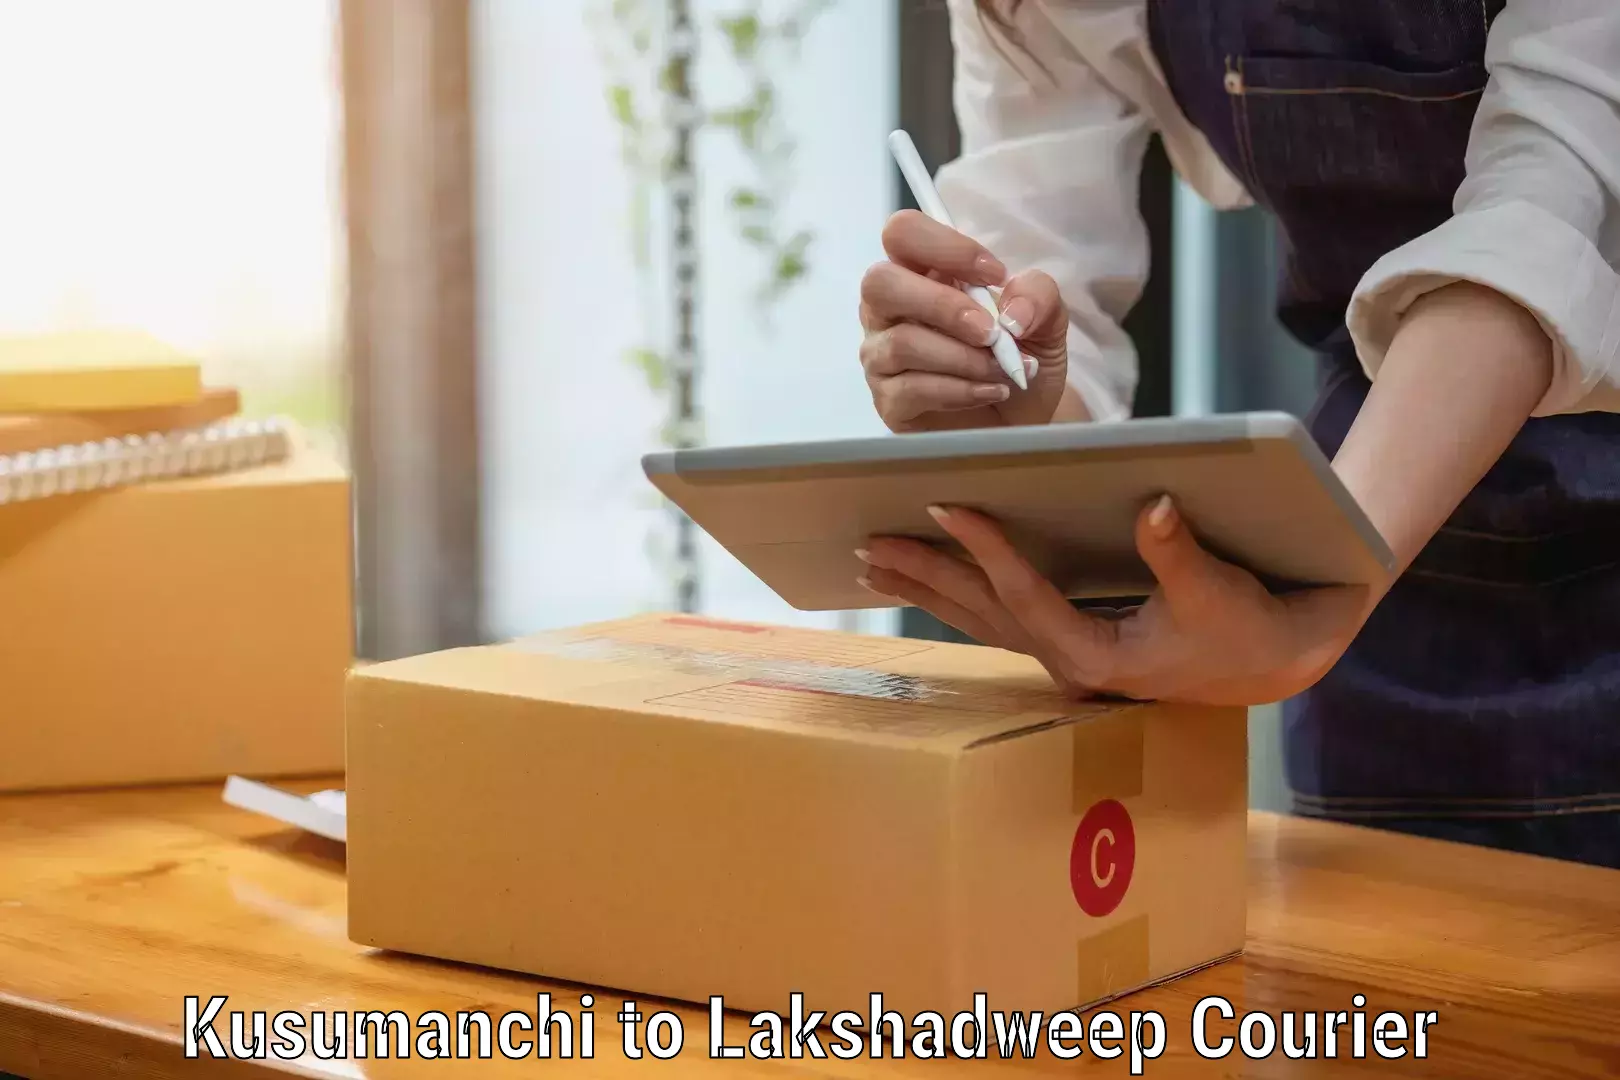 Trusted moving company Kusumanchi to Lakshadweep